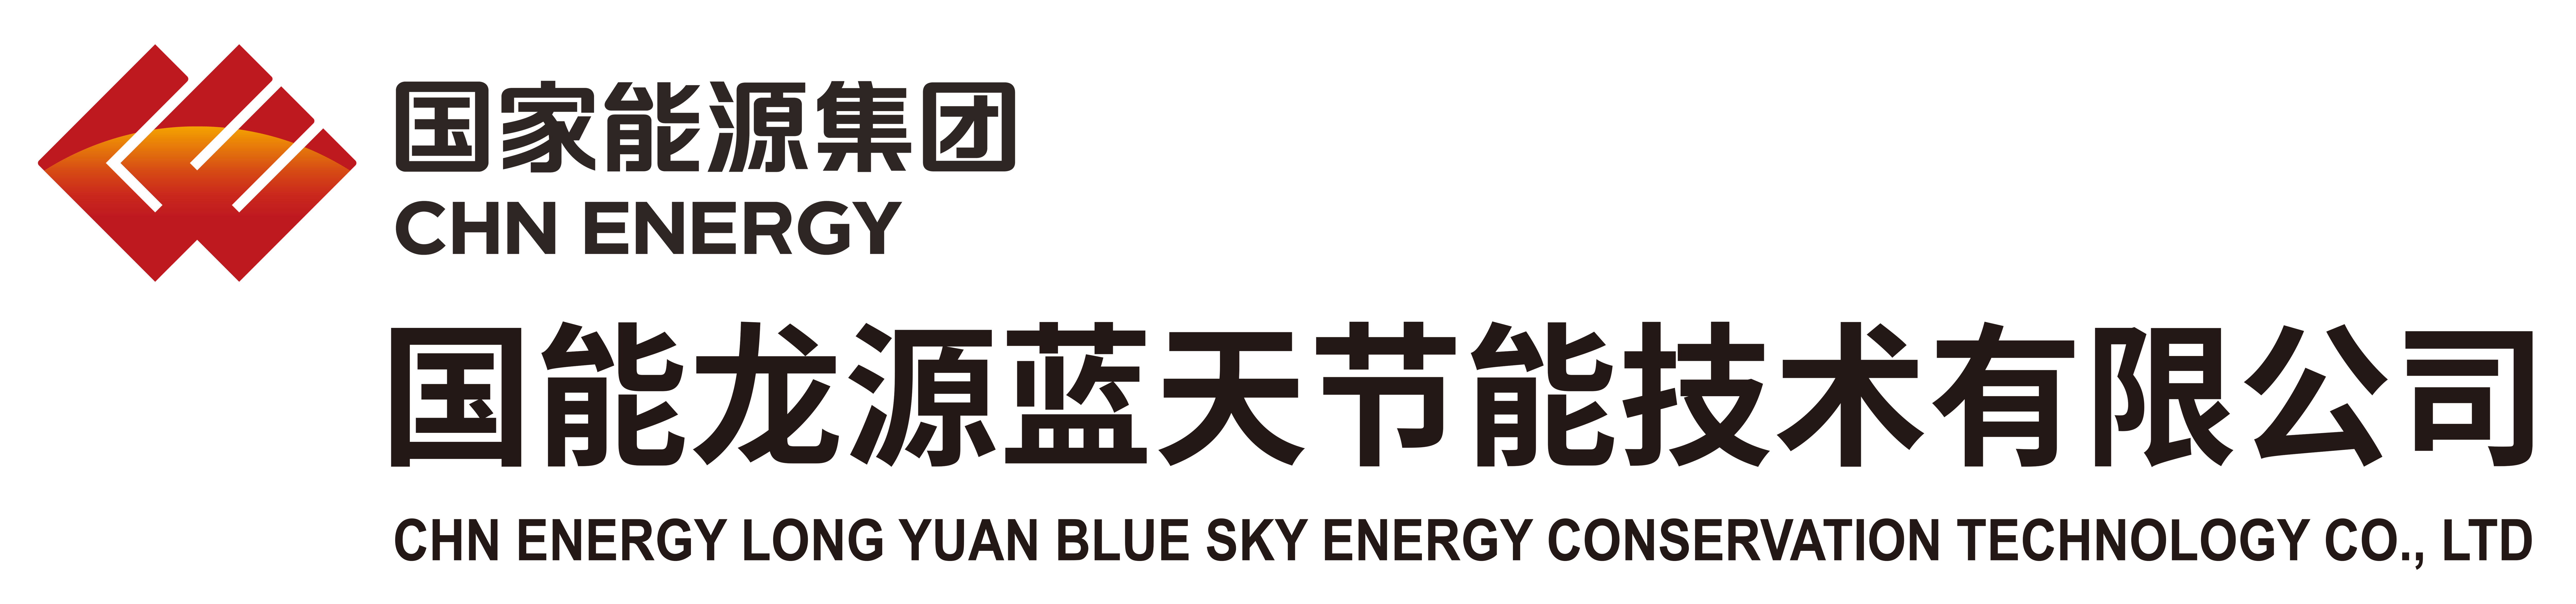 国能龙源蓝天节能技术有限公司